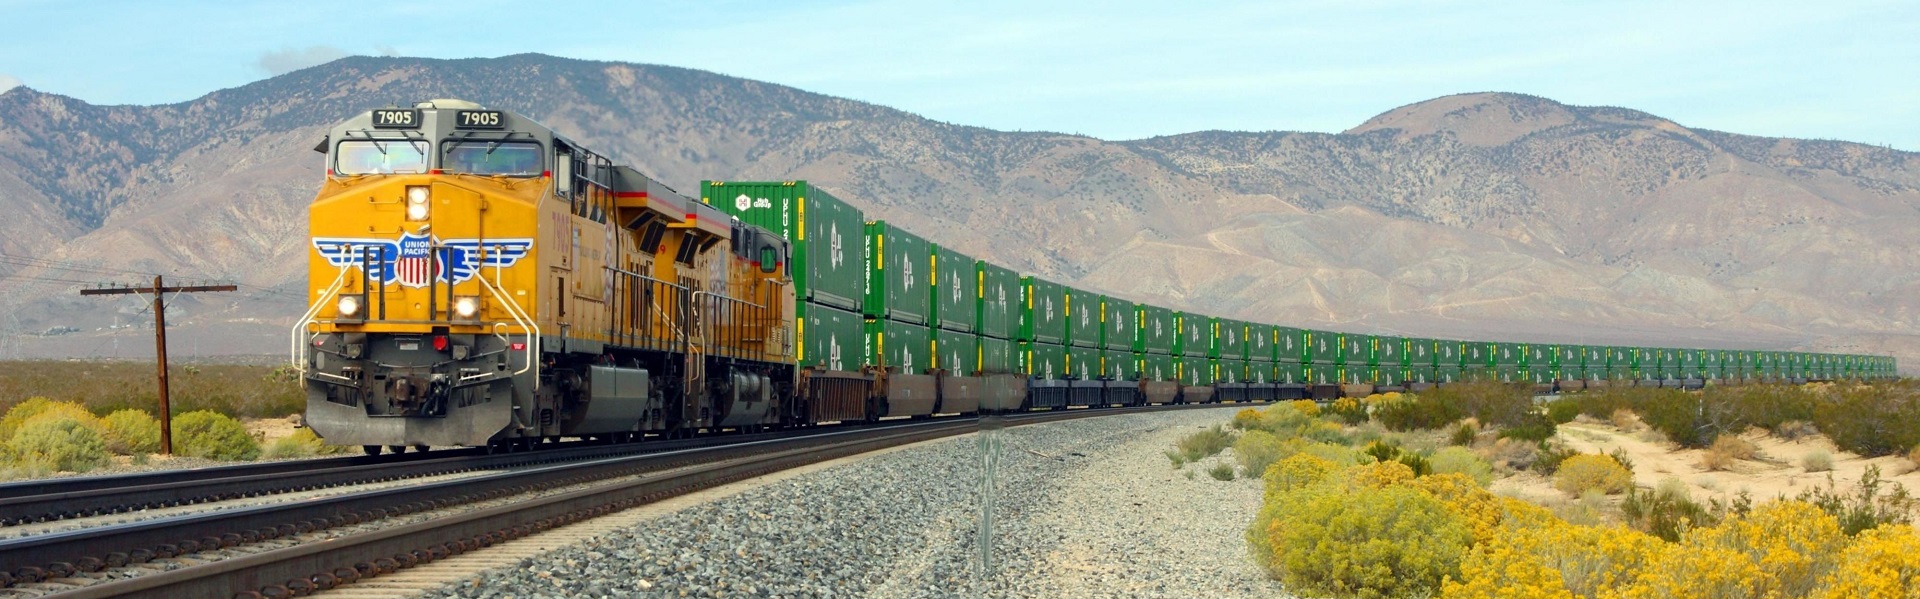 168极速赛车开奖网 Intermodal train near Mojave, California